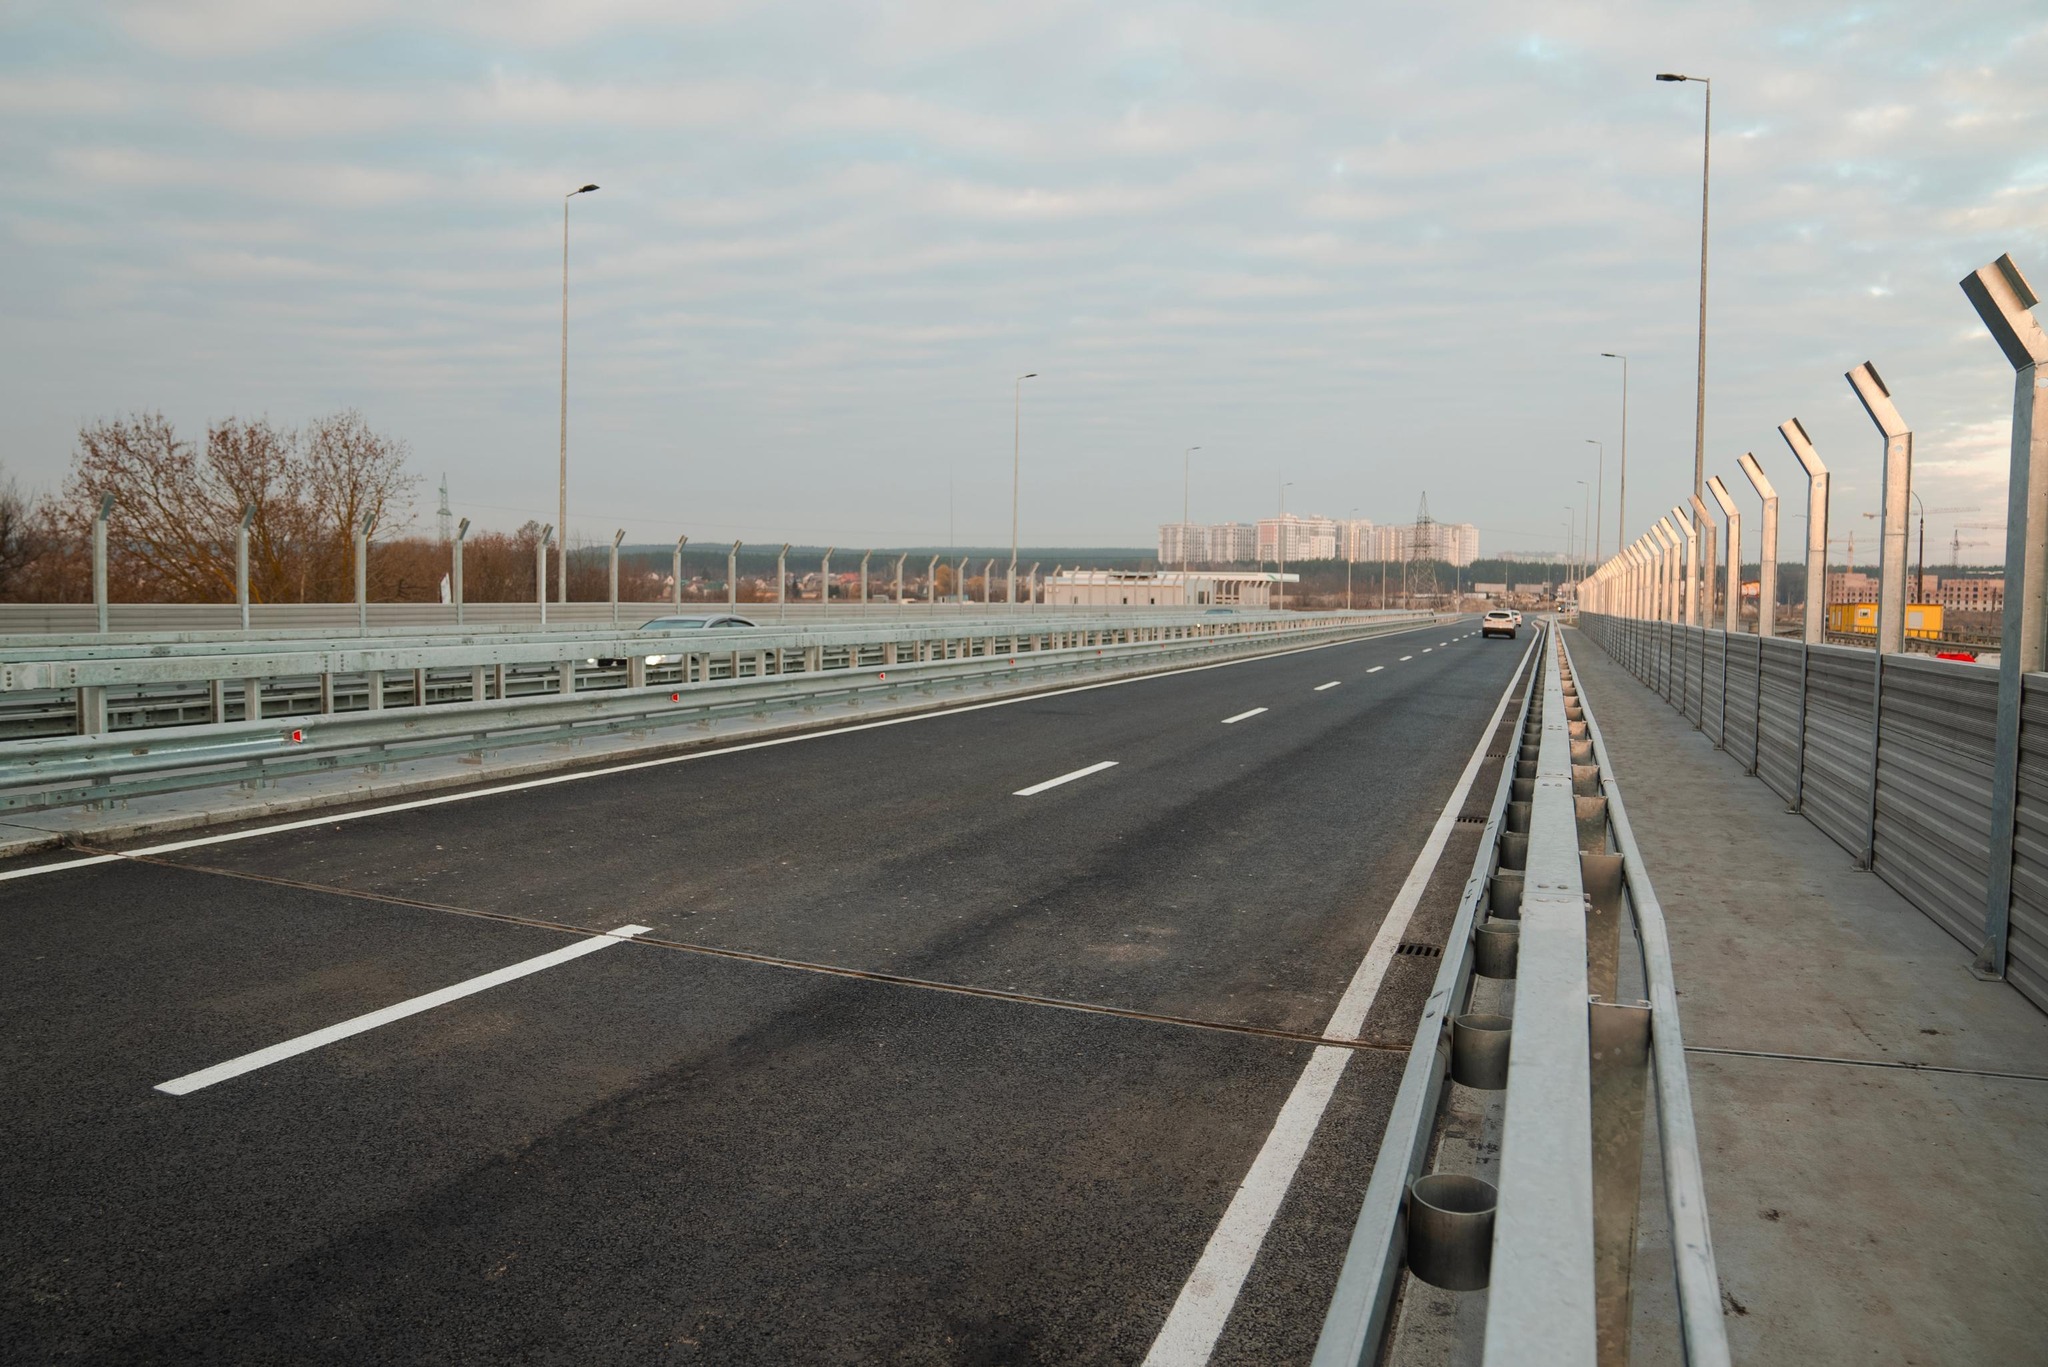 В Ирпене открыли мост вместо подорванного, где во время оккупации эвакуировались люди